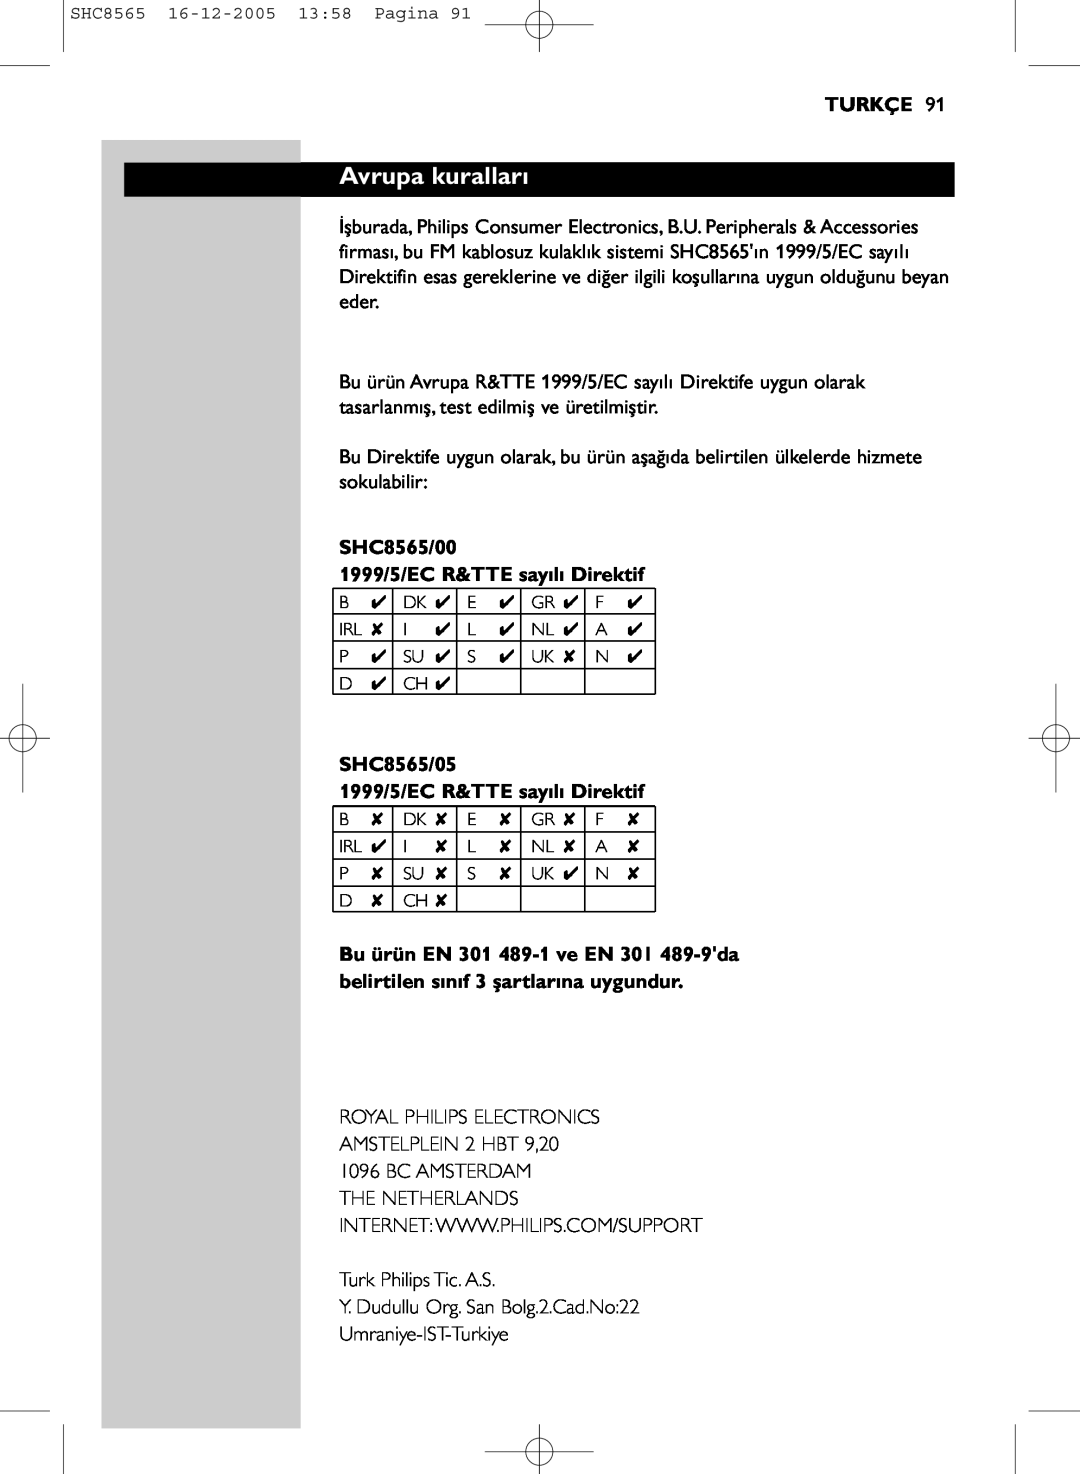 Philips manual Avrupa kuralları, Turkçe, SHC8565/00 1999/5/EC R&TTE sayılı Direktif 